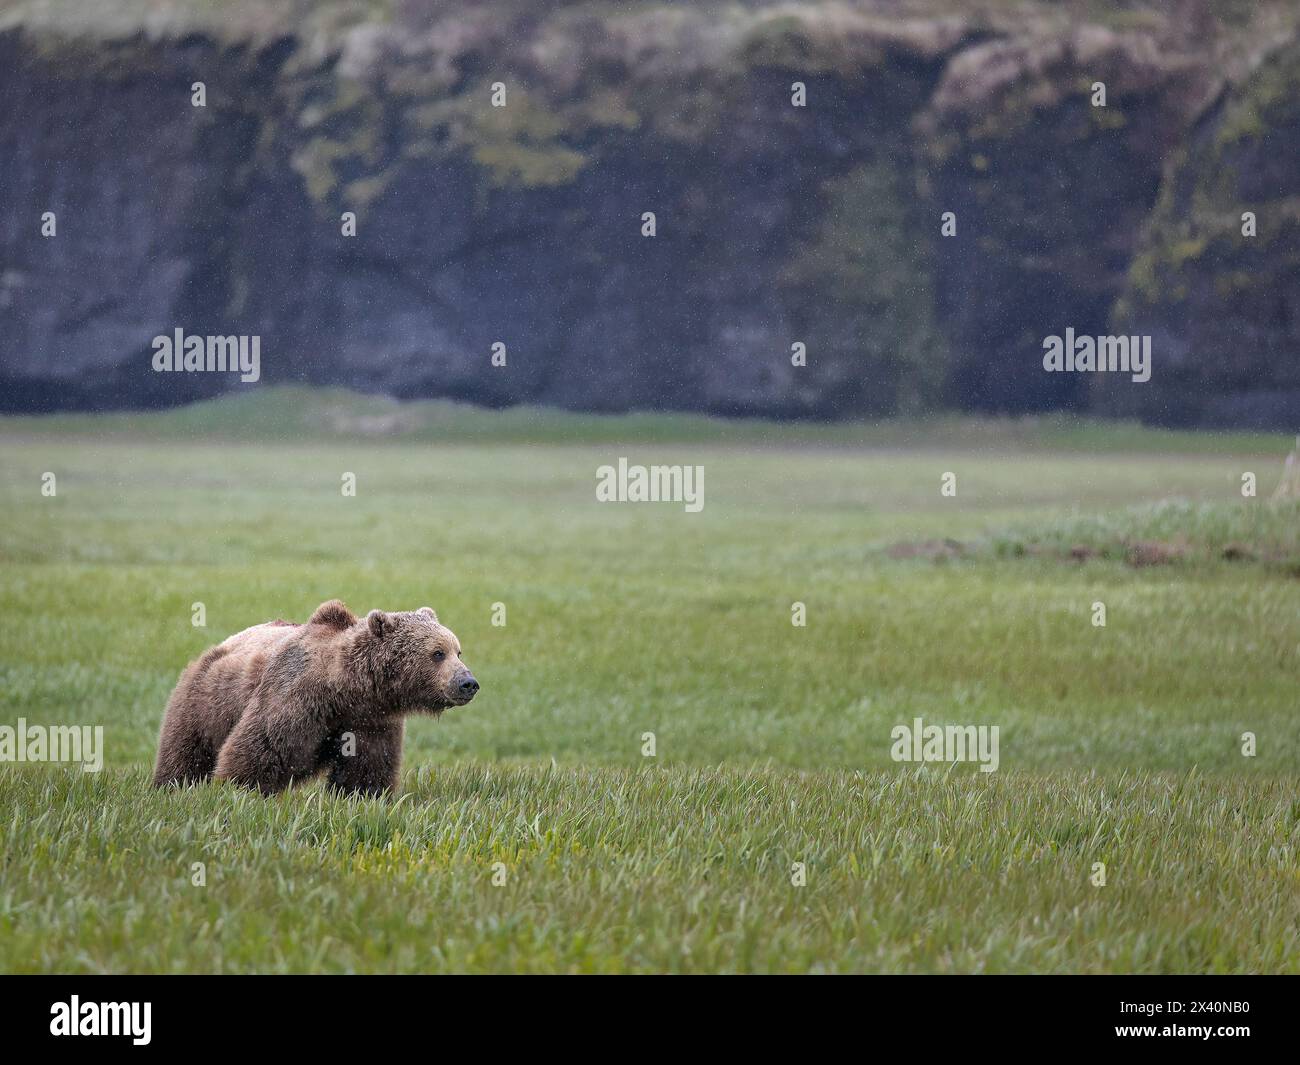 Braunbär (Ursus arctos) spaziert bei leichtem Regen auf den Seggenebenen in der Nähe des McNeil River, Alaska. Braunbären versammeln sich jeden Frühling in der Gegend und... Stockfoto